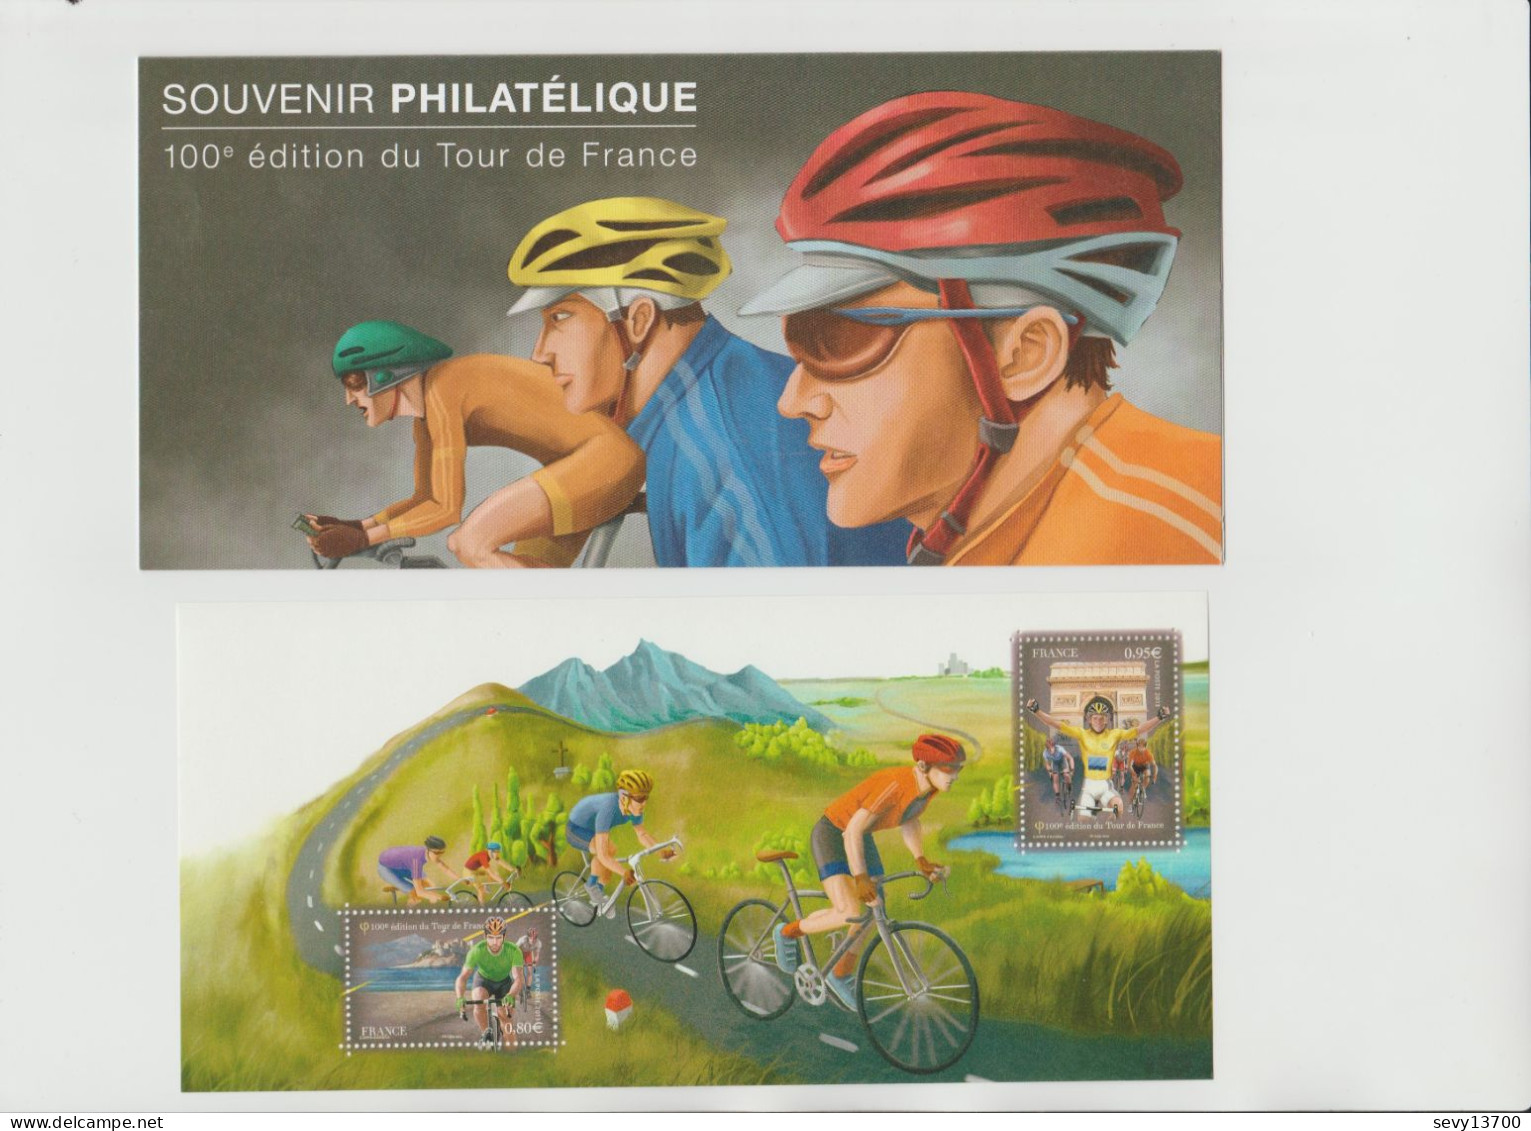 France 2013 Souvenir Philatélique Yvert Tellier N° 81 100ème Edition Du Tour De France - Souvenir Blocks